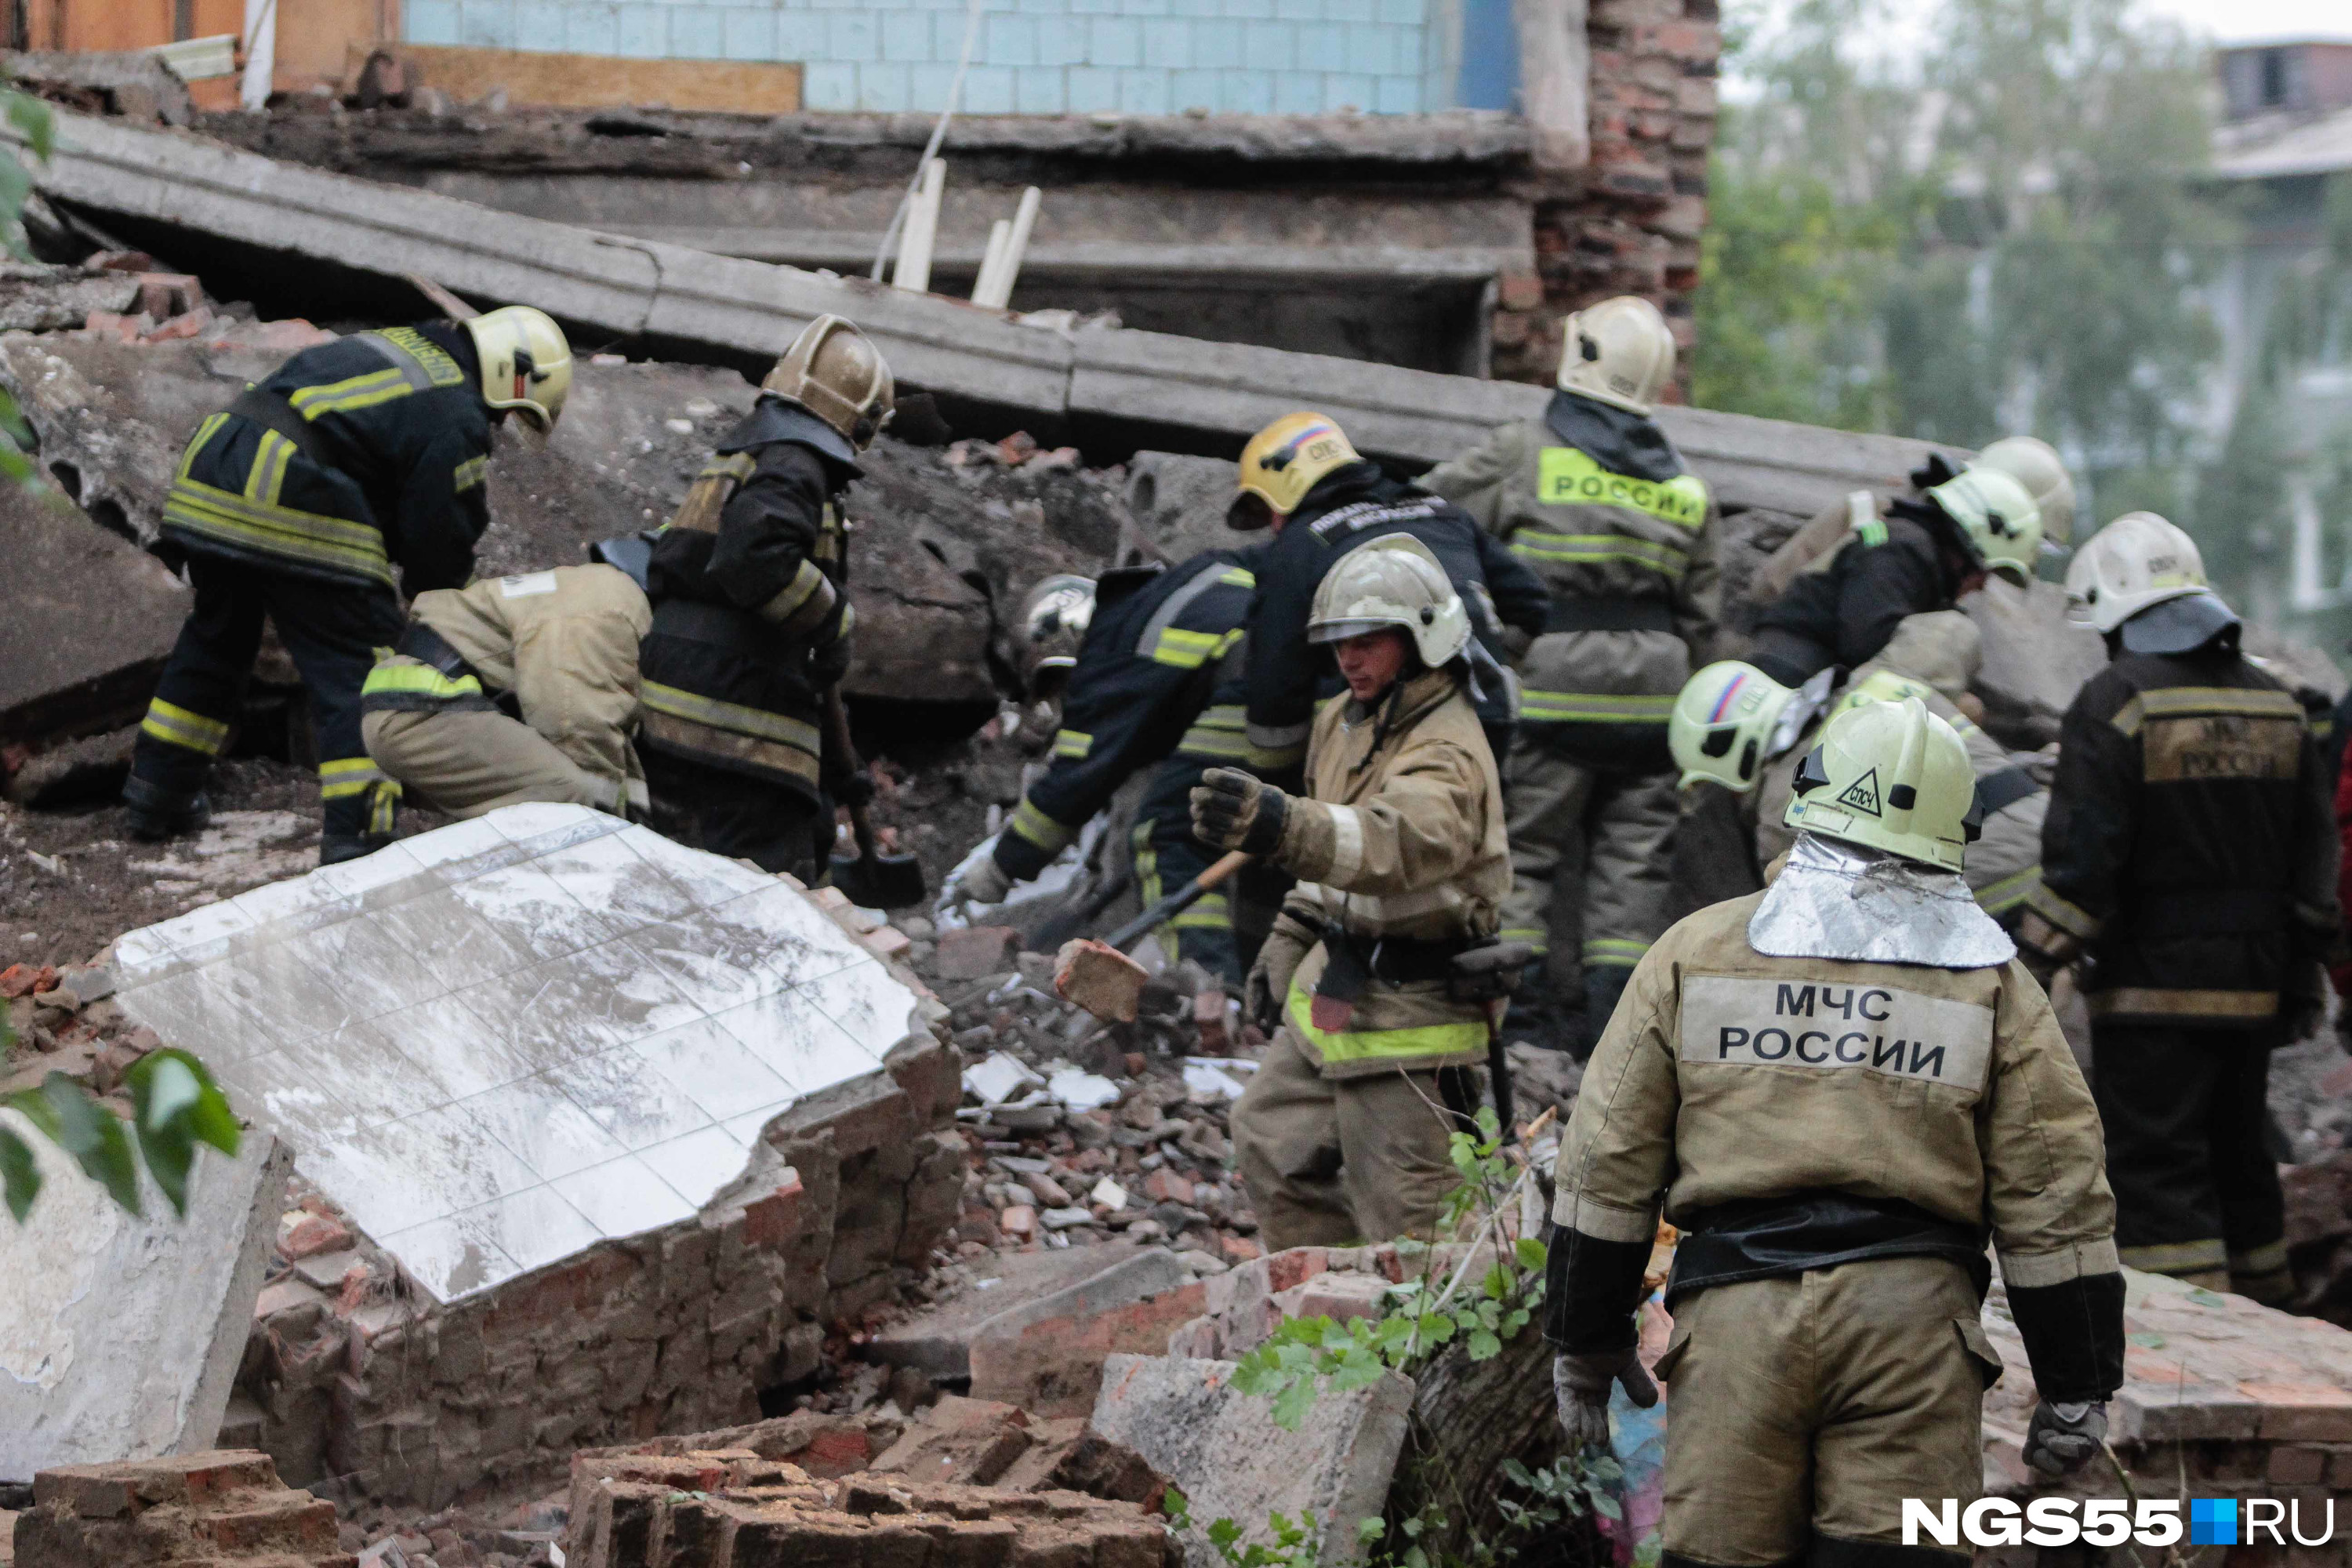 Омск обрушение дома 12 августа. Рухнул дом. Обломки здания. Спасатели разбирают завалы.